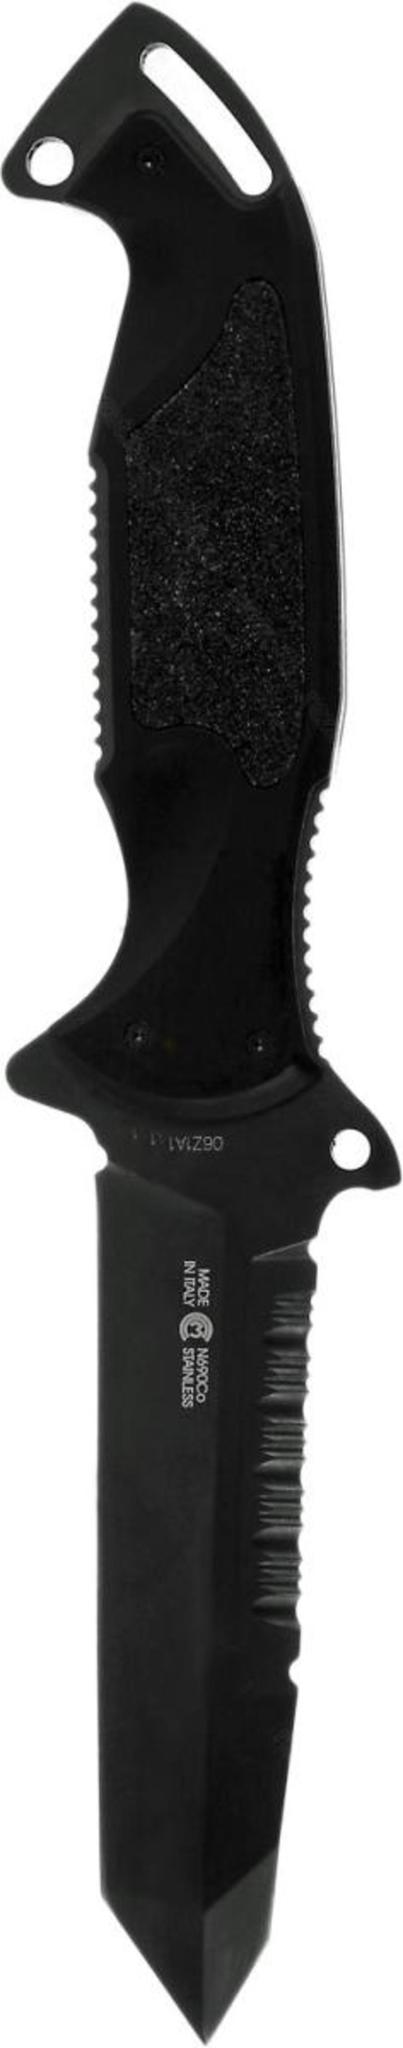 Нож с фиксированным клинком Remington Зулу I (Zulu) RM\895FT Tanto DLC, сталь 440C DLC, алюминий от Ножиков